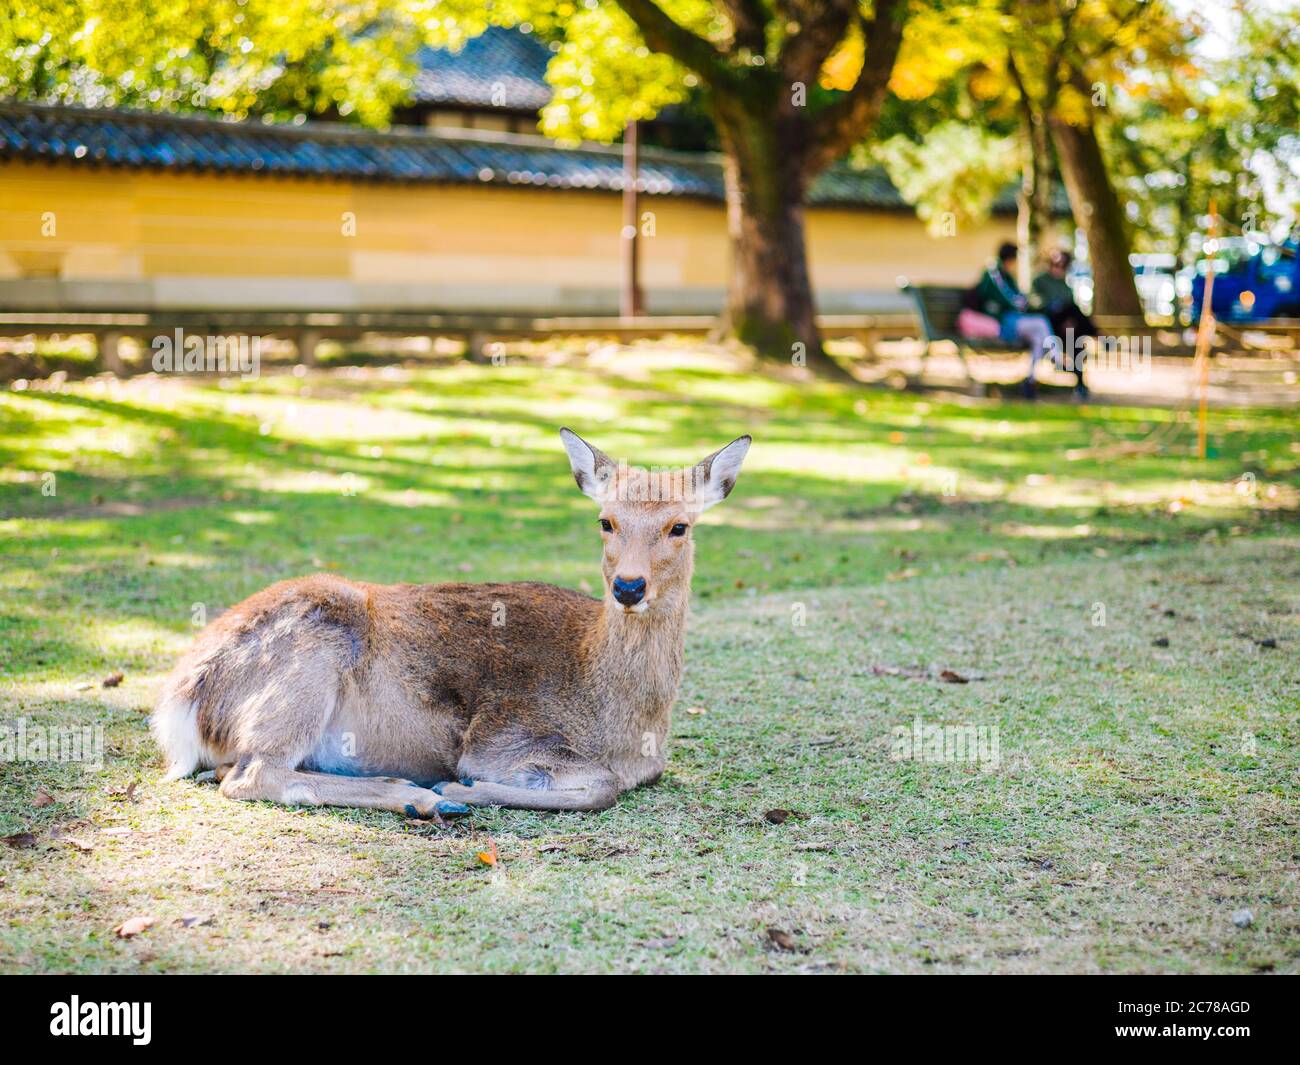 Tame deer in Nara/Japan Stock Photo